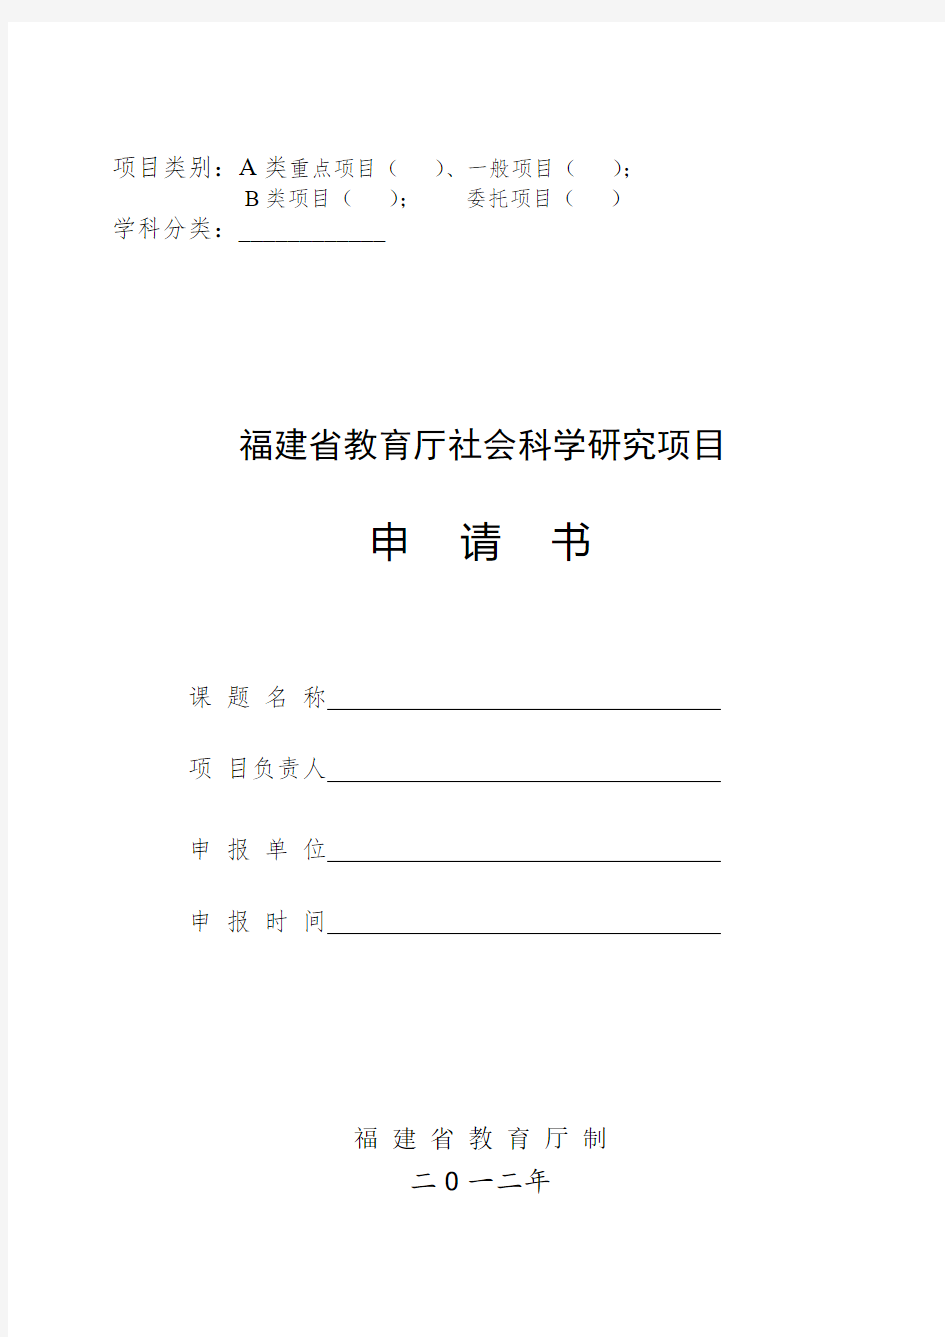 福建省教育厅社会科学研究项目申请书(版)